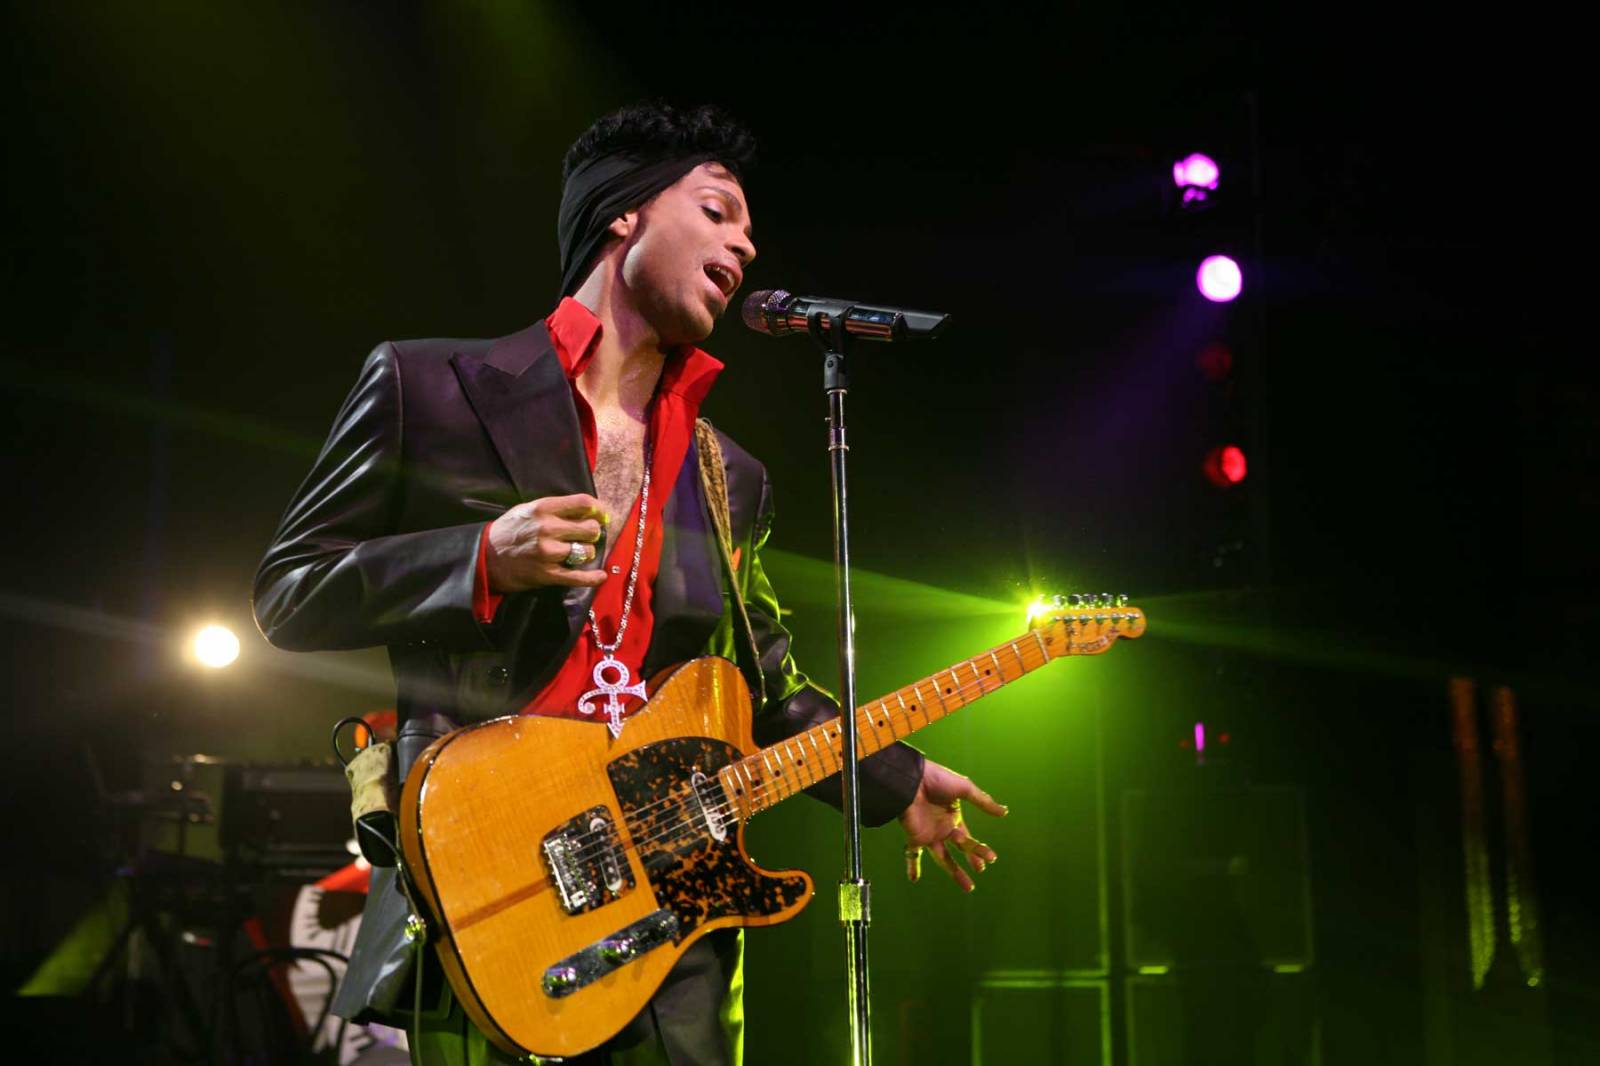 Nová hudba Prince vyjde k prvnímu výročí jeho úmrtí. EP Deliverance budou následovat další alba